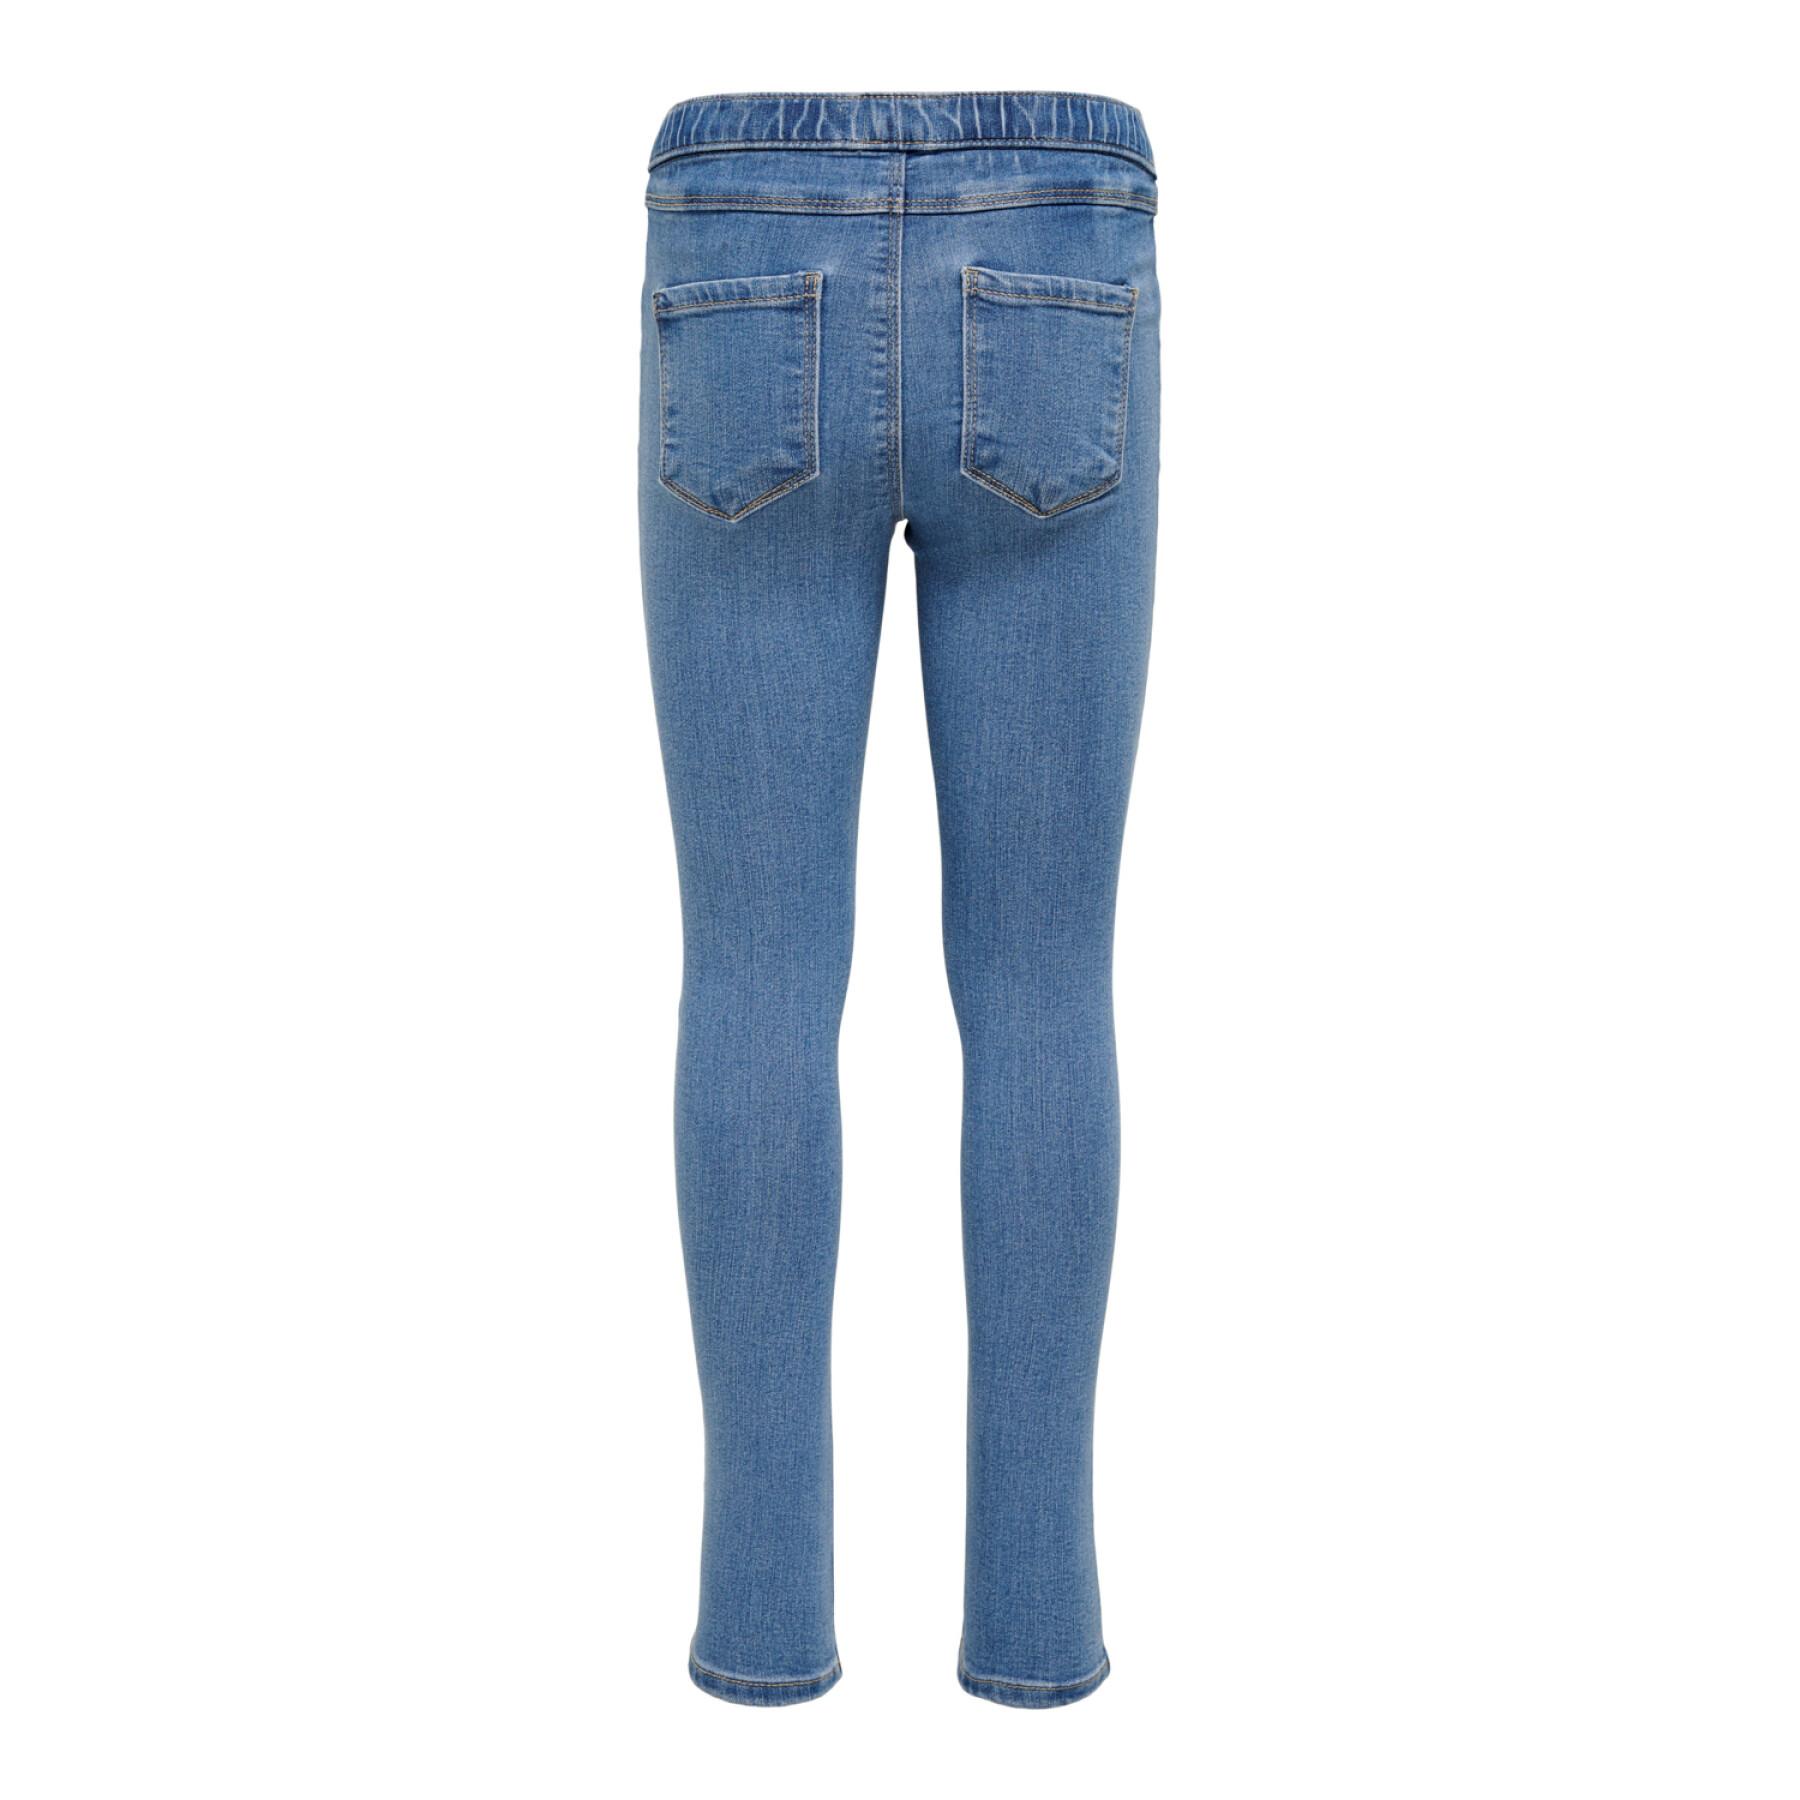 Girl's jeans Only Konrain Life Sportlegging Bj009 Noos